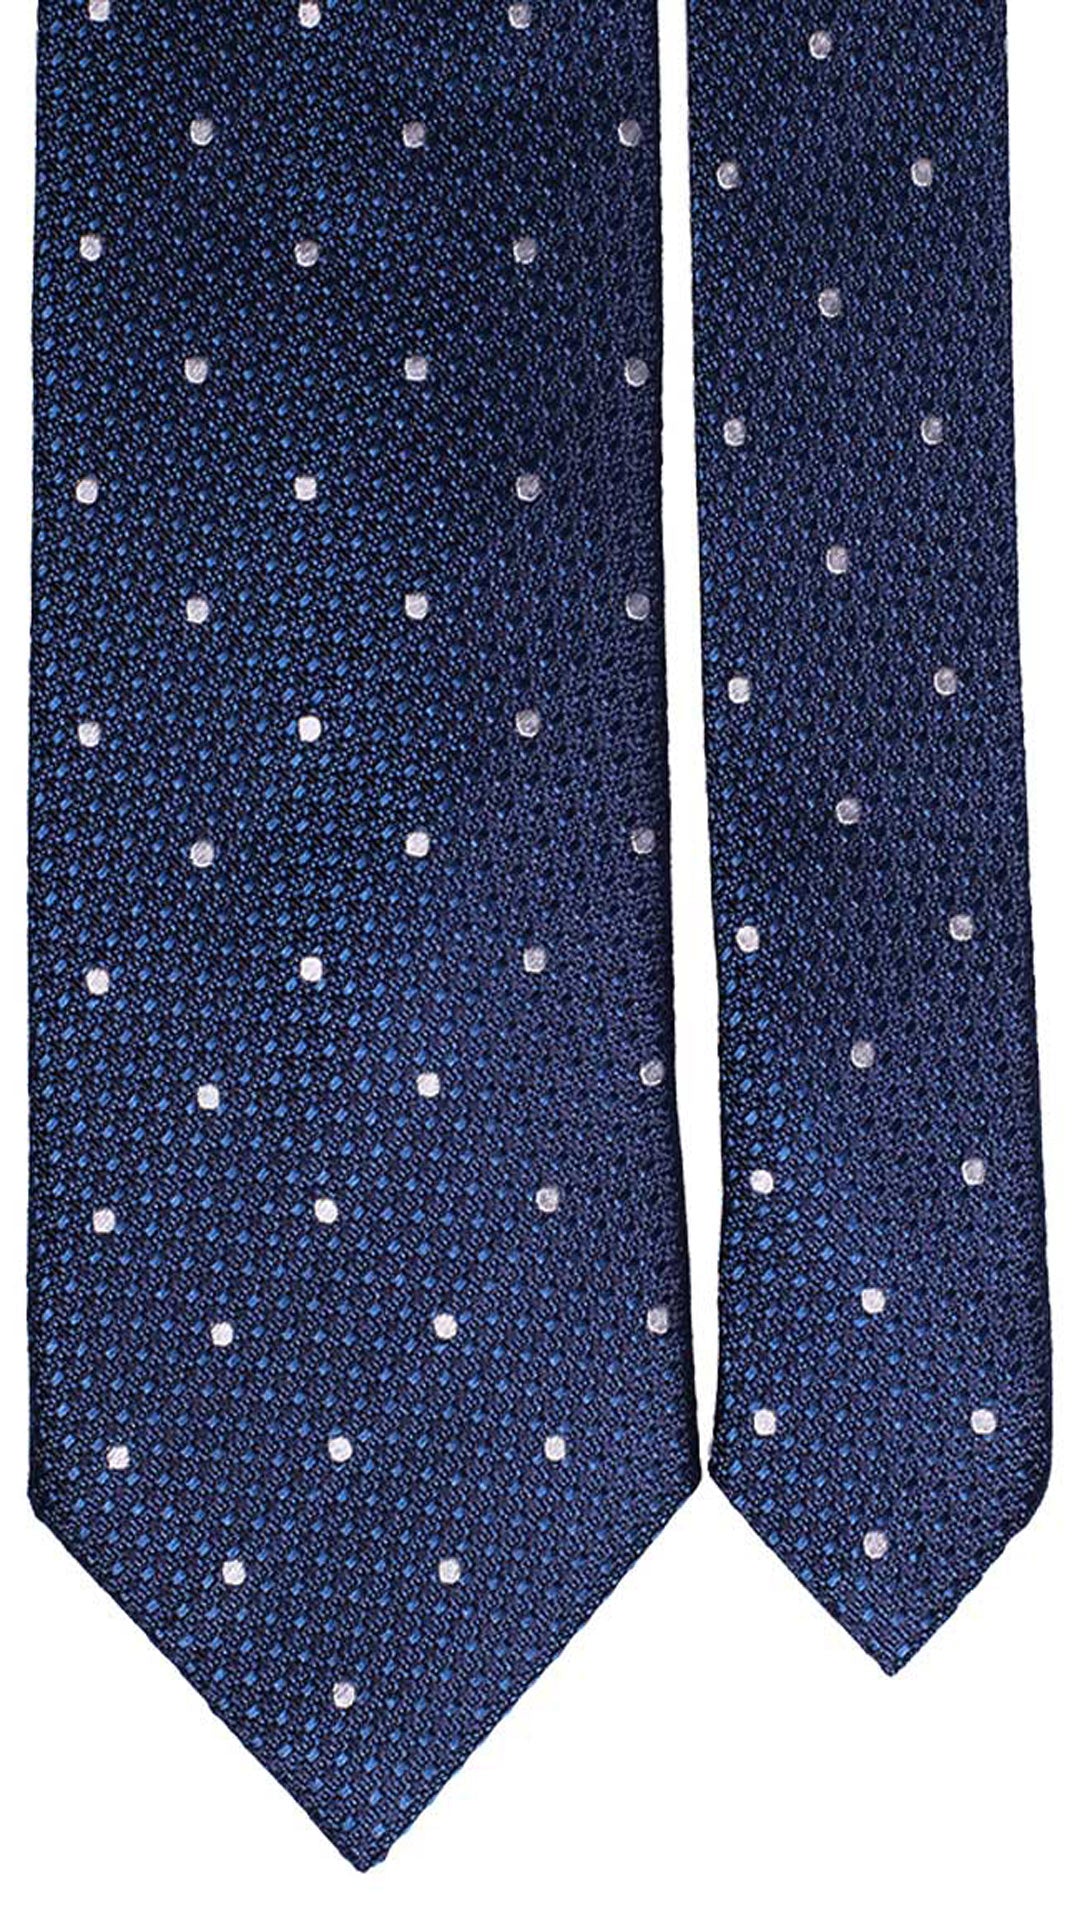 Cravatta da Cerimonia di Seta Blu Navy Fantasia Tono su Tono a Pois Bianchi CY4686 Pala